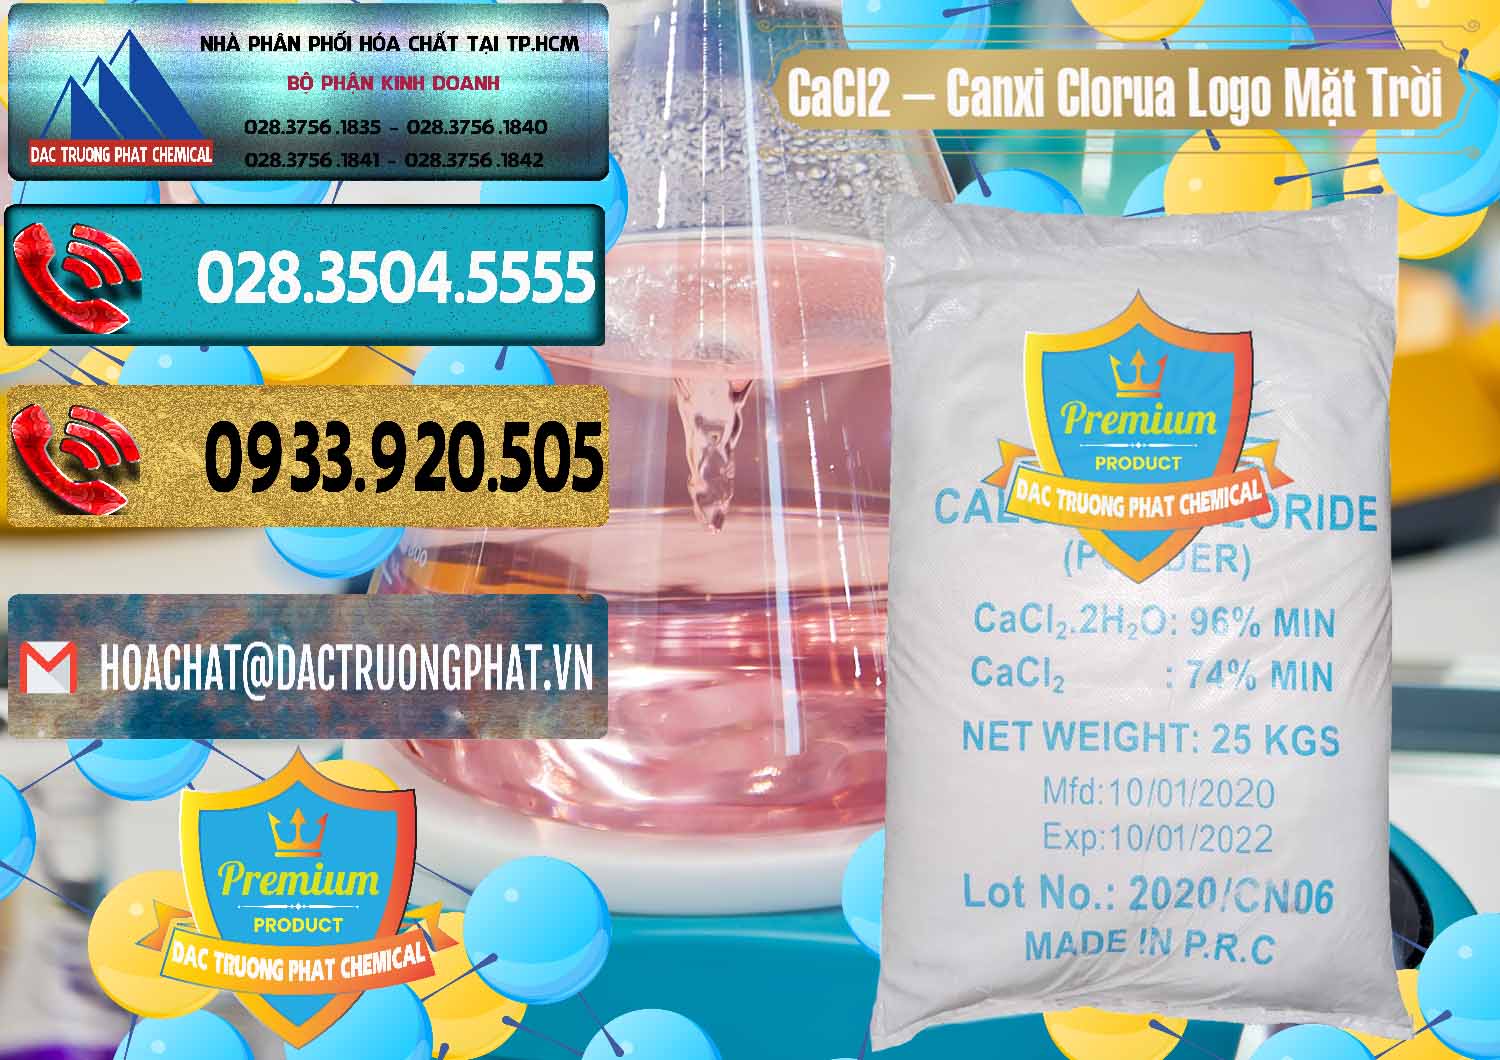 Đơn vị chuyên bán _ phân phối CaCl2 – Canxi Clorua 96% Logo Mặt Trời Trung Quốc China - 0041 - Phân phối ( cung cấp ) hóa chất tại TP.HCM - hoachatdetnhuom.com